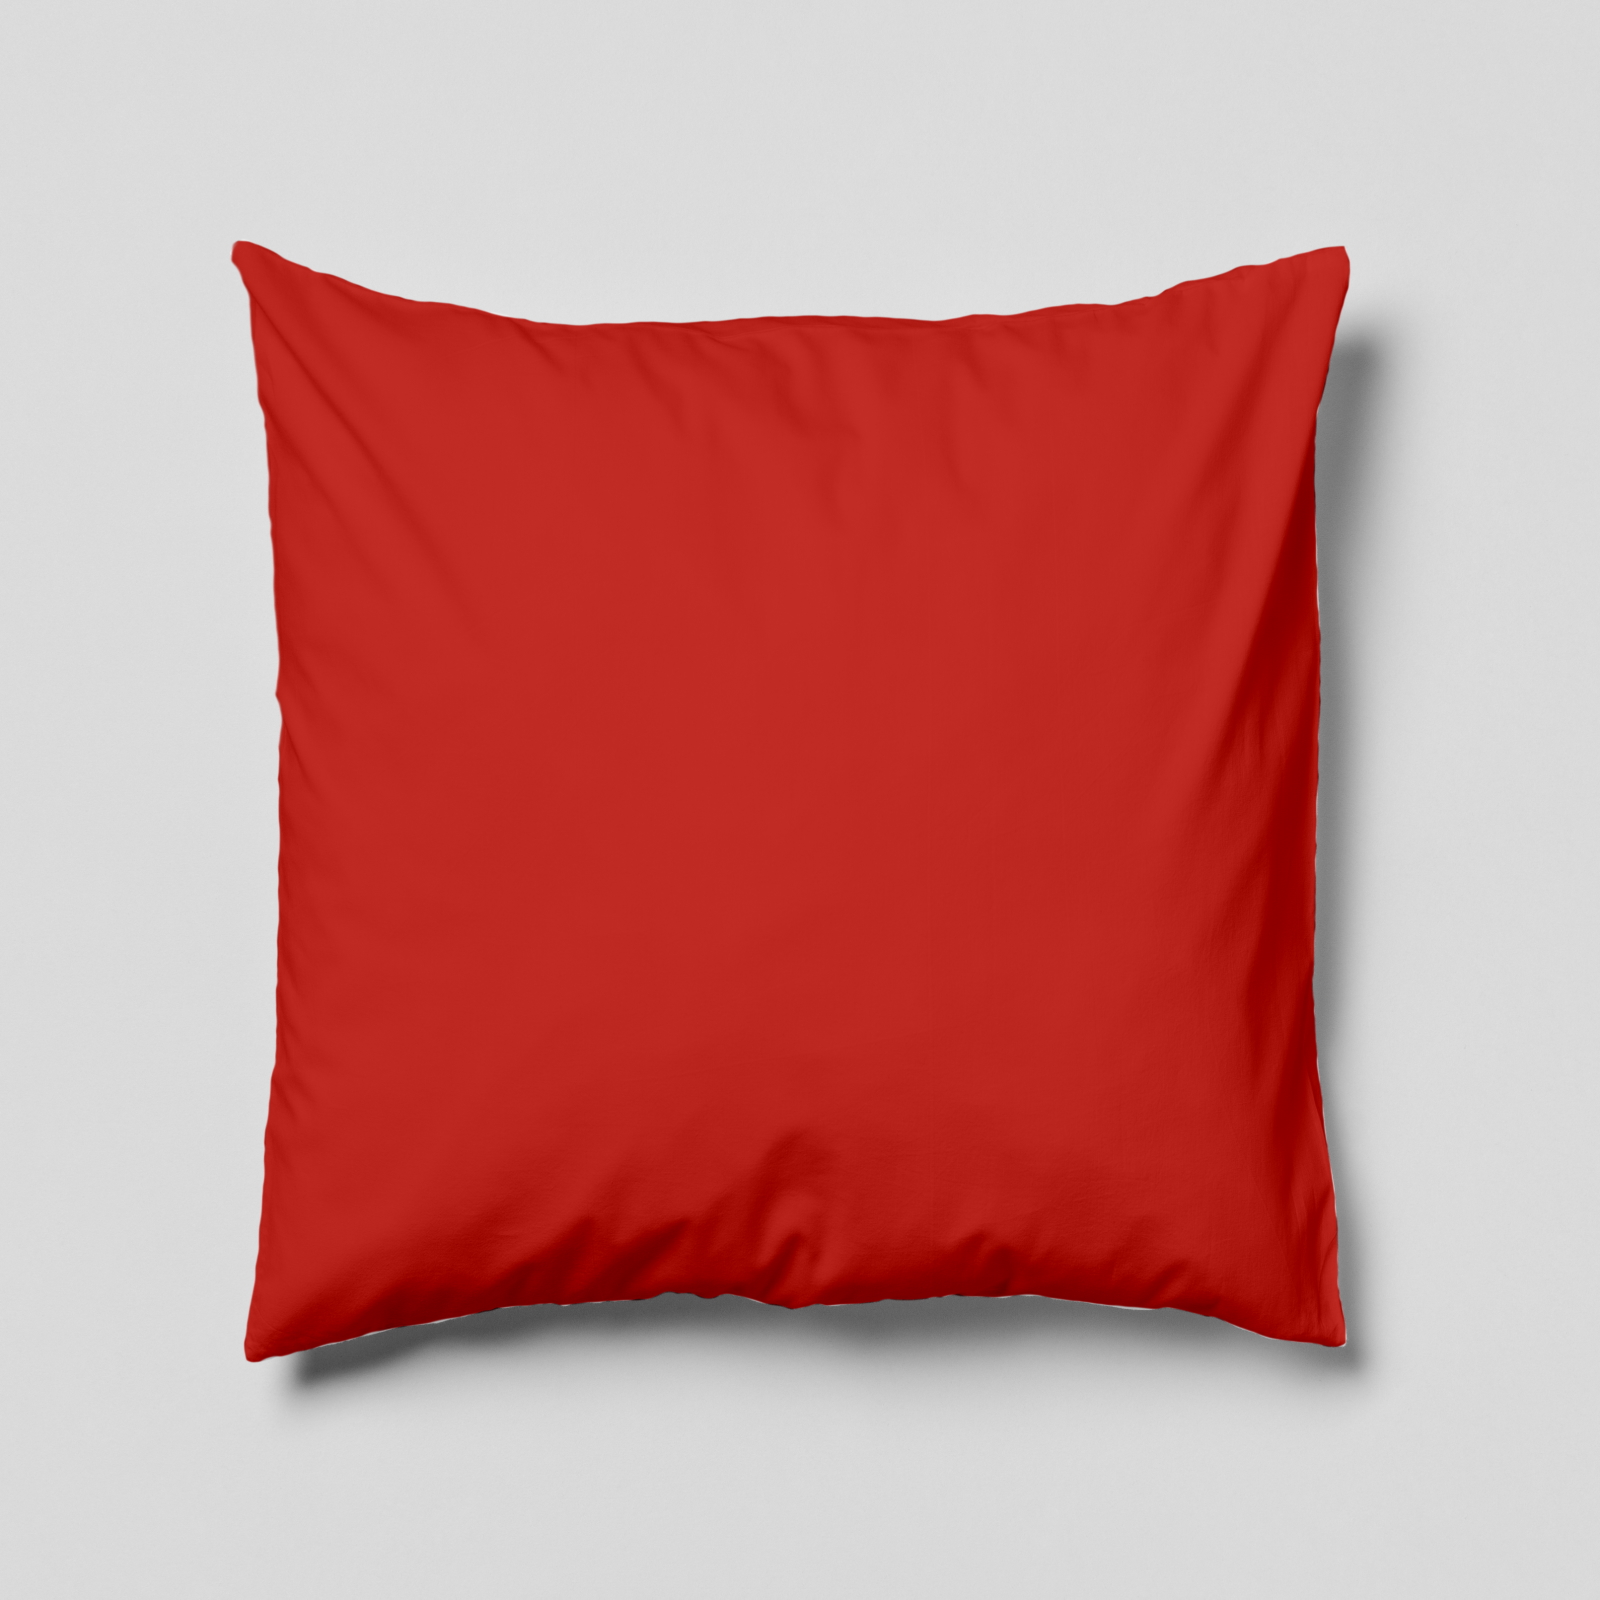 Komplettkissen Polyester-Rot / 30x30 cm